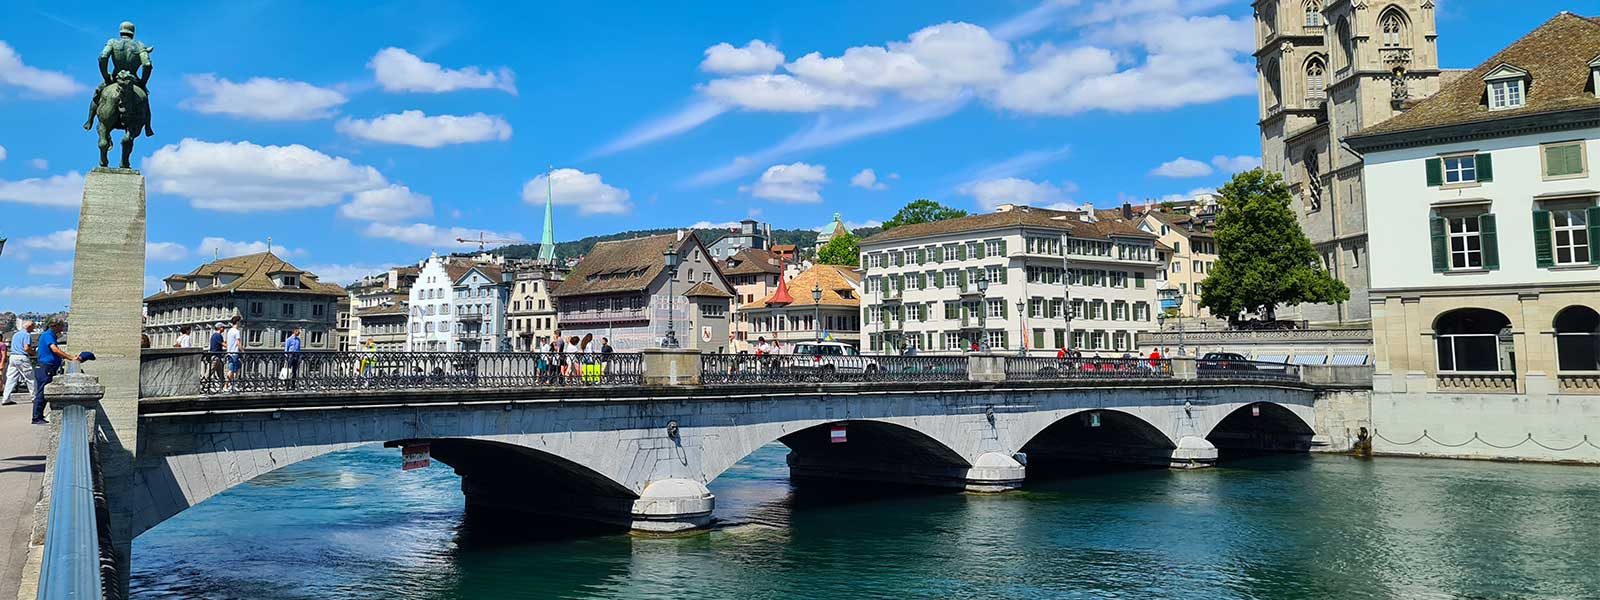 Stadsbeeld van Zürich